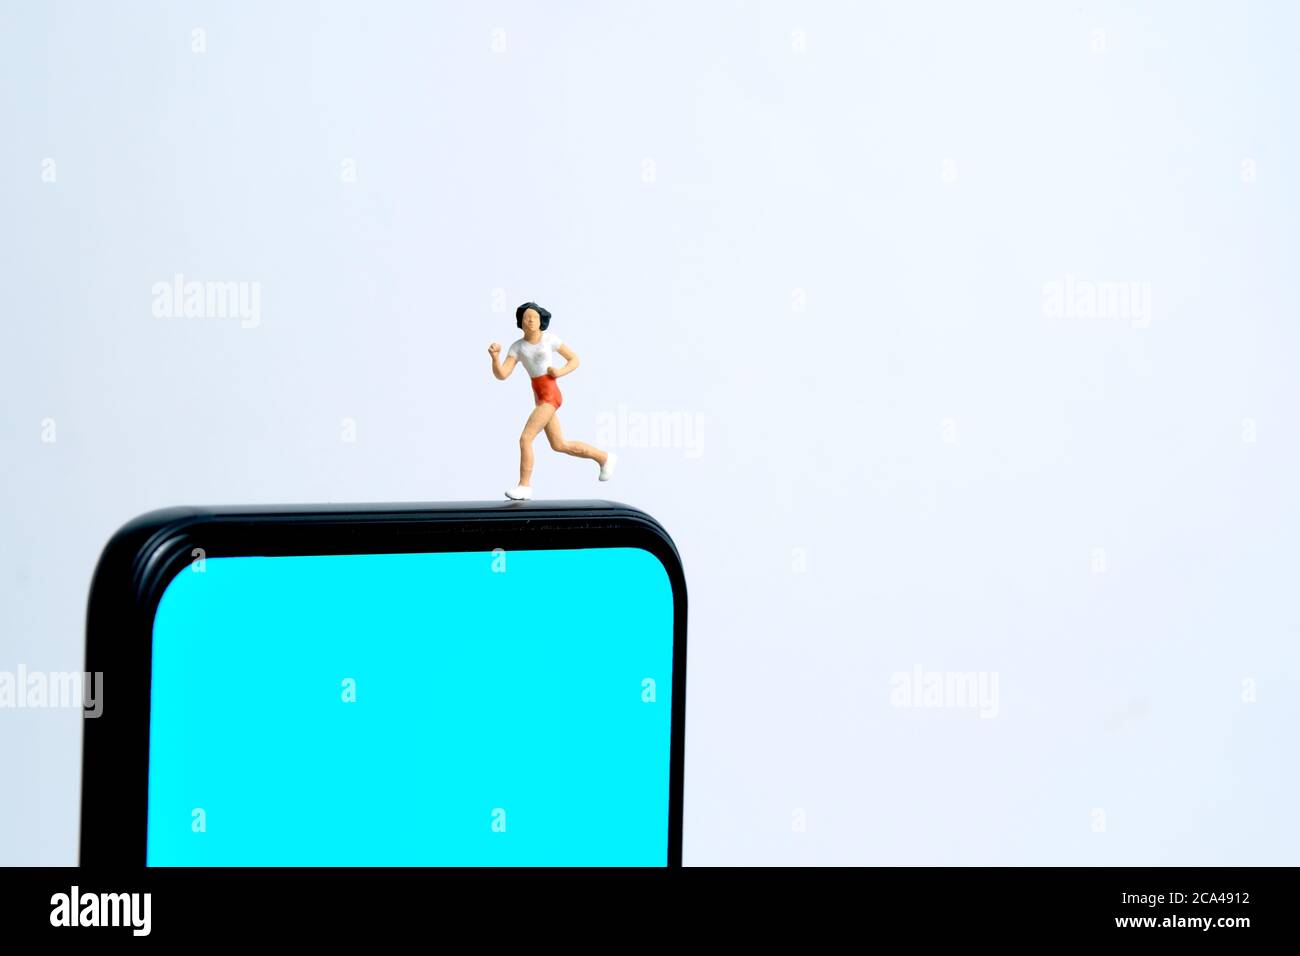 Concetto di app per il monitoraggio della corsa e del jogging. Una donna che corre sopra lo smartphone. Fotografia di figure di persone in miniatura. Foto Stock